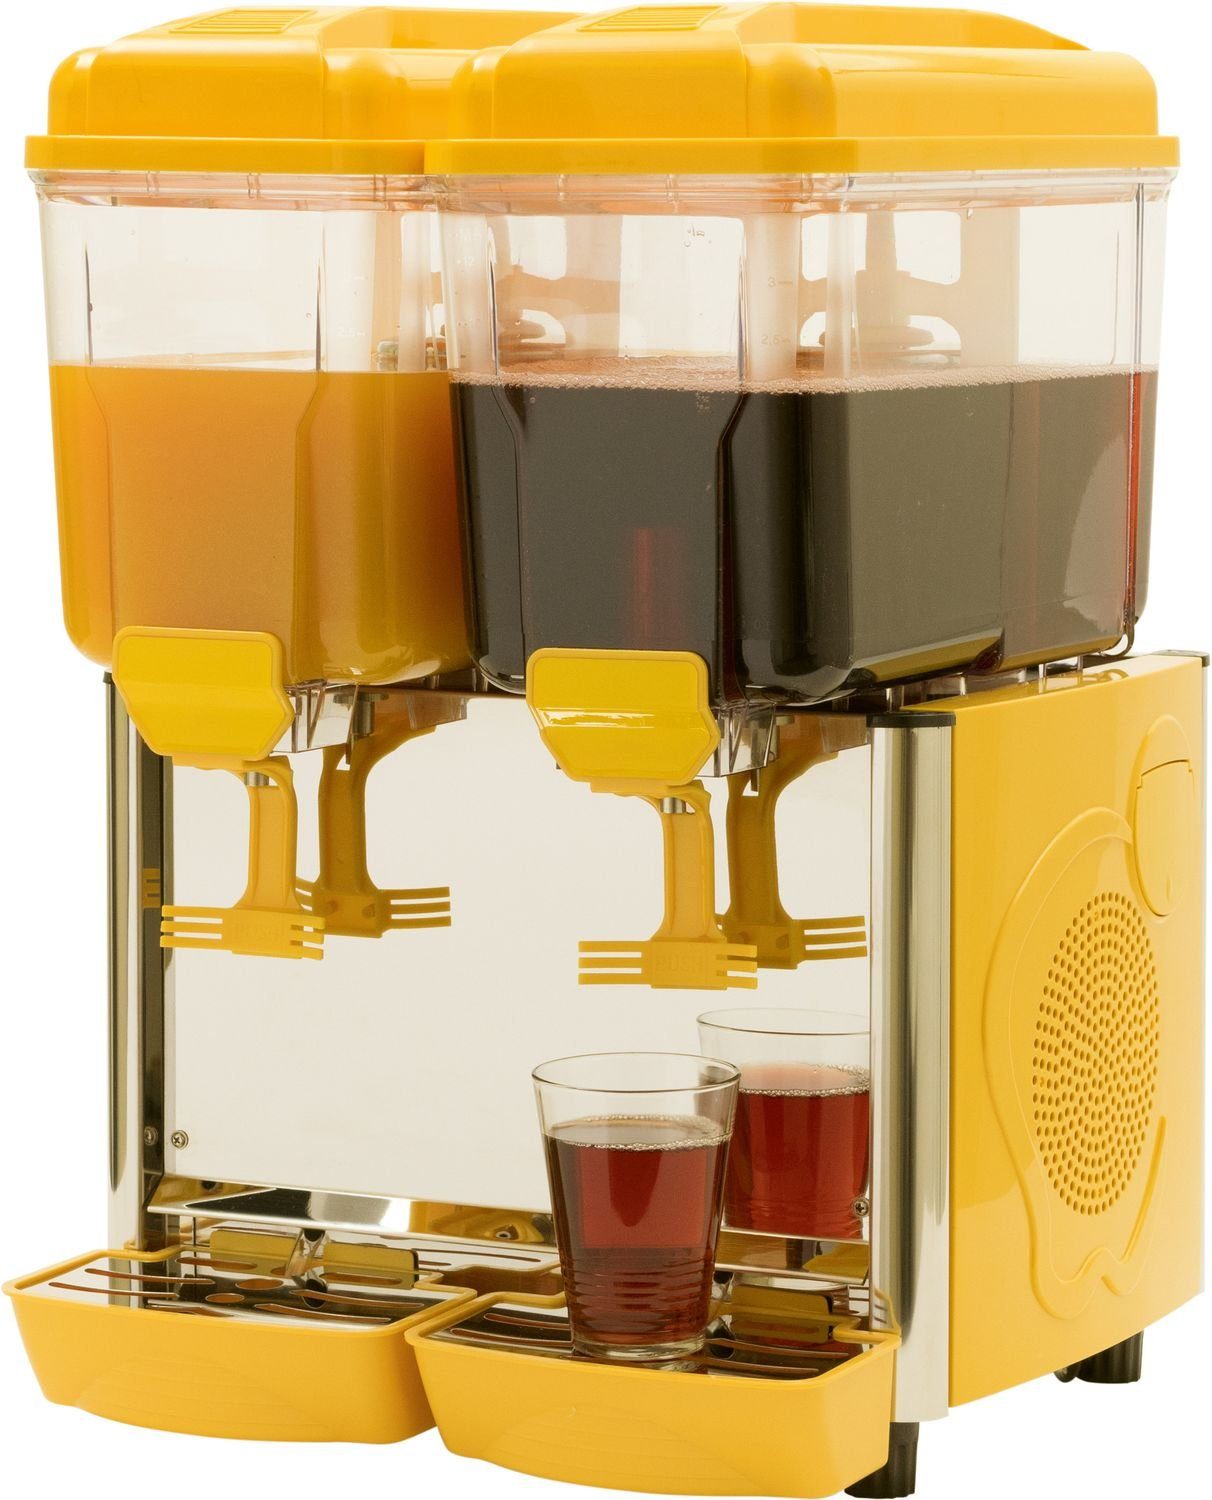 Kaltgetränke Getränkespender mit Saro Kühlung, Saftspender, gelb 2G Dispenser, Einkochautomat